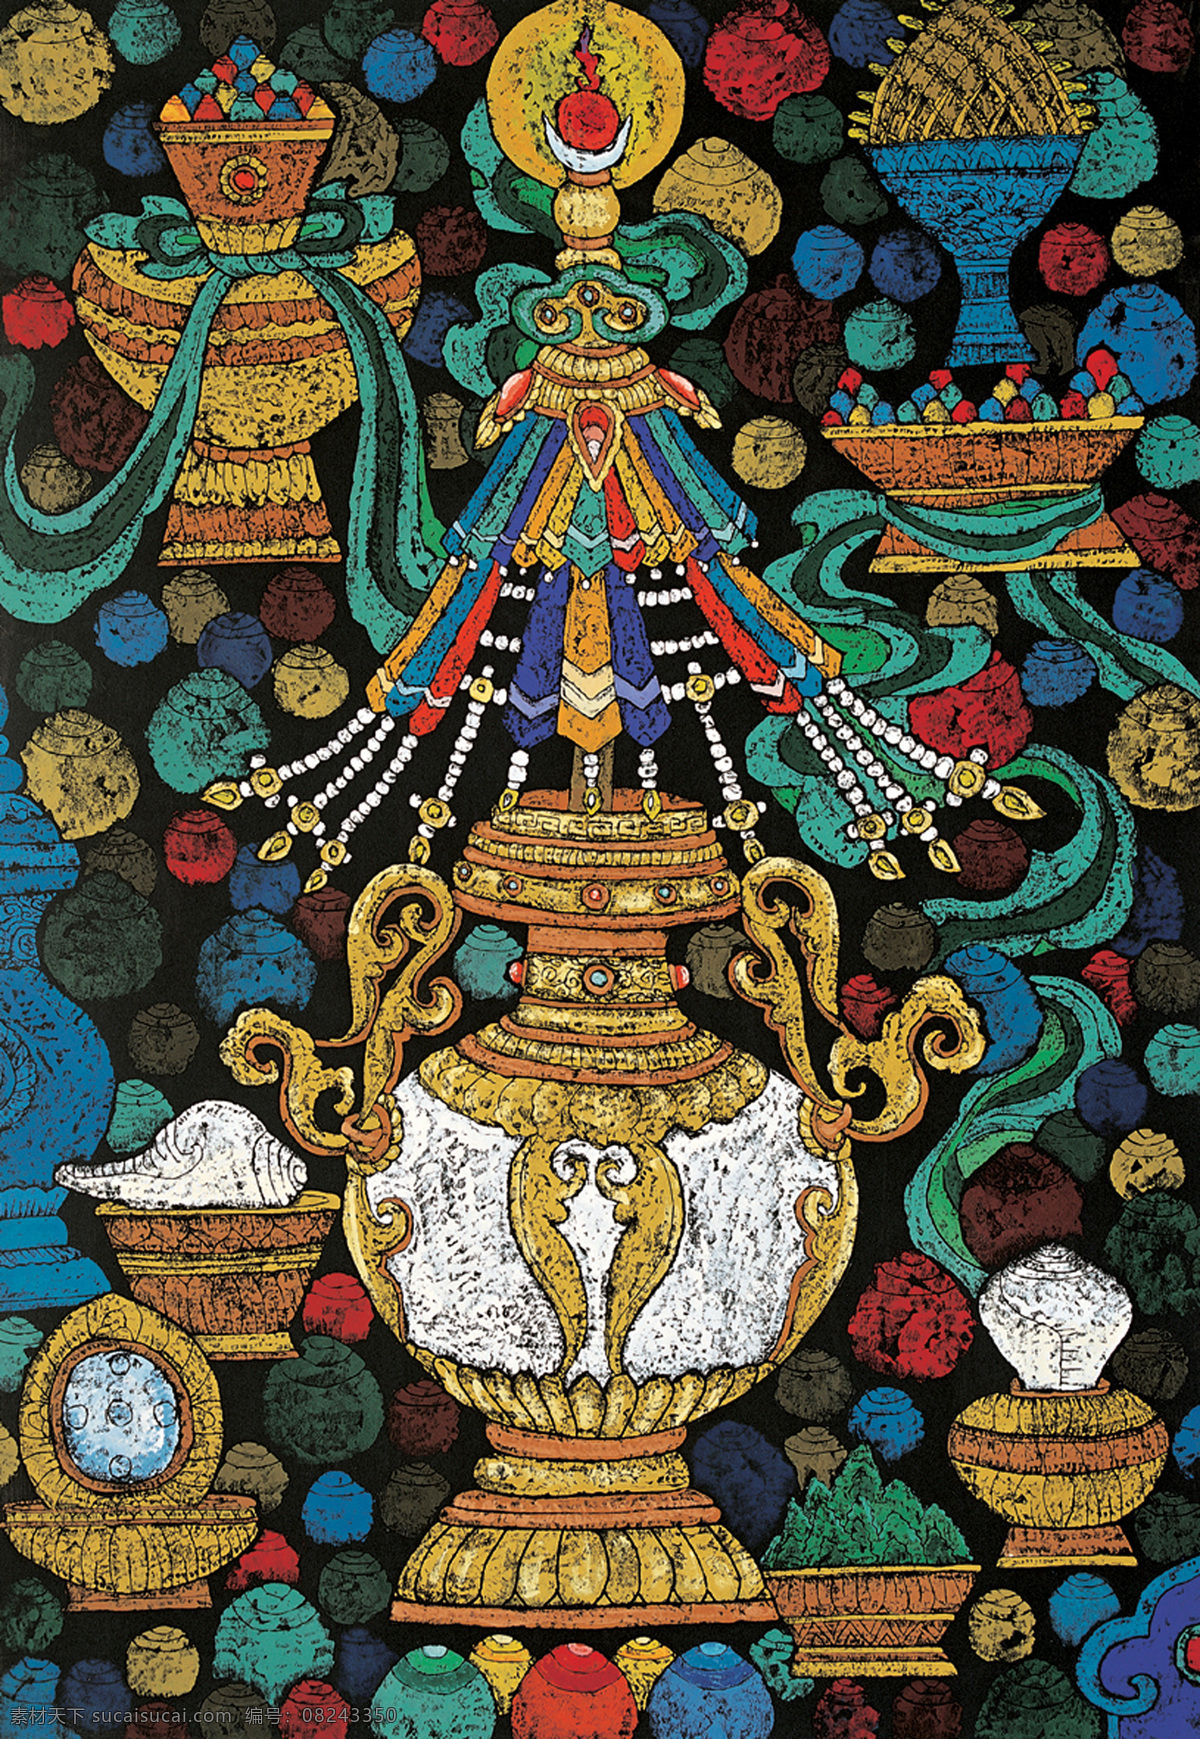 版画 作品 藏族 抽象 抽象画 抽象色彩 绘画 精美 民族 手绘 西藏 尚基卓玛 木版 祥巴 艺术 文化艺术